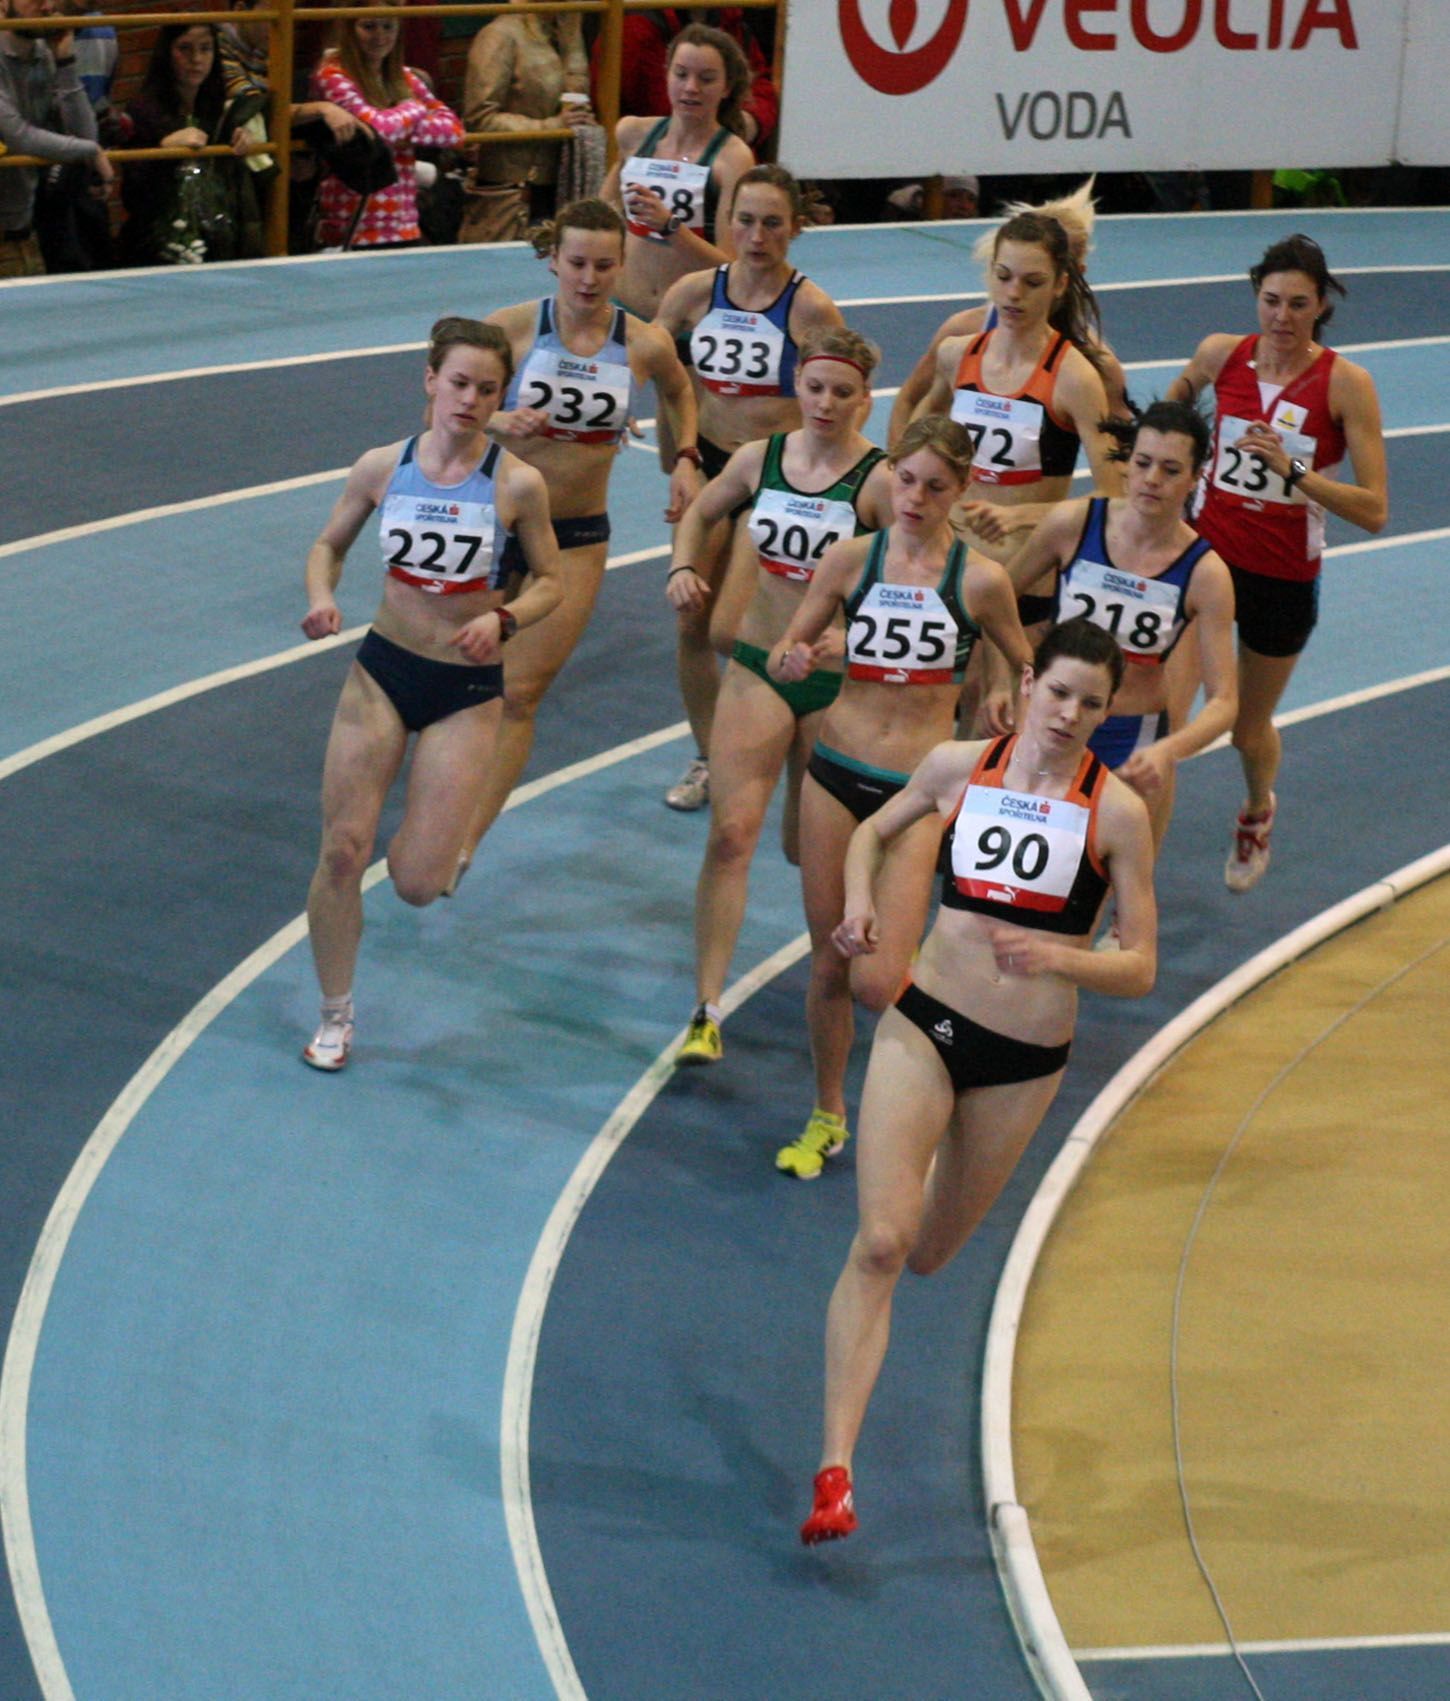 Mistrovství republiky (halové) v atletice, Stromovka, únor 2012